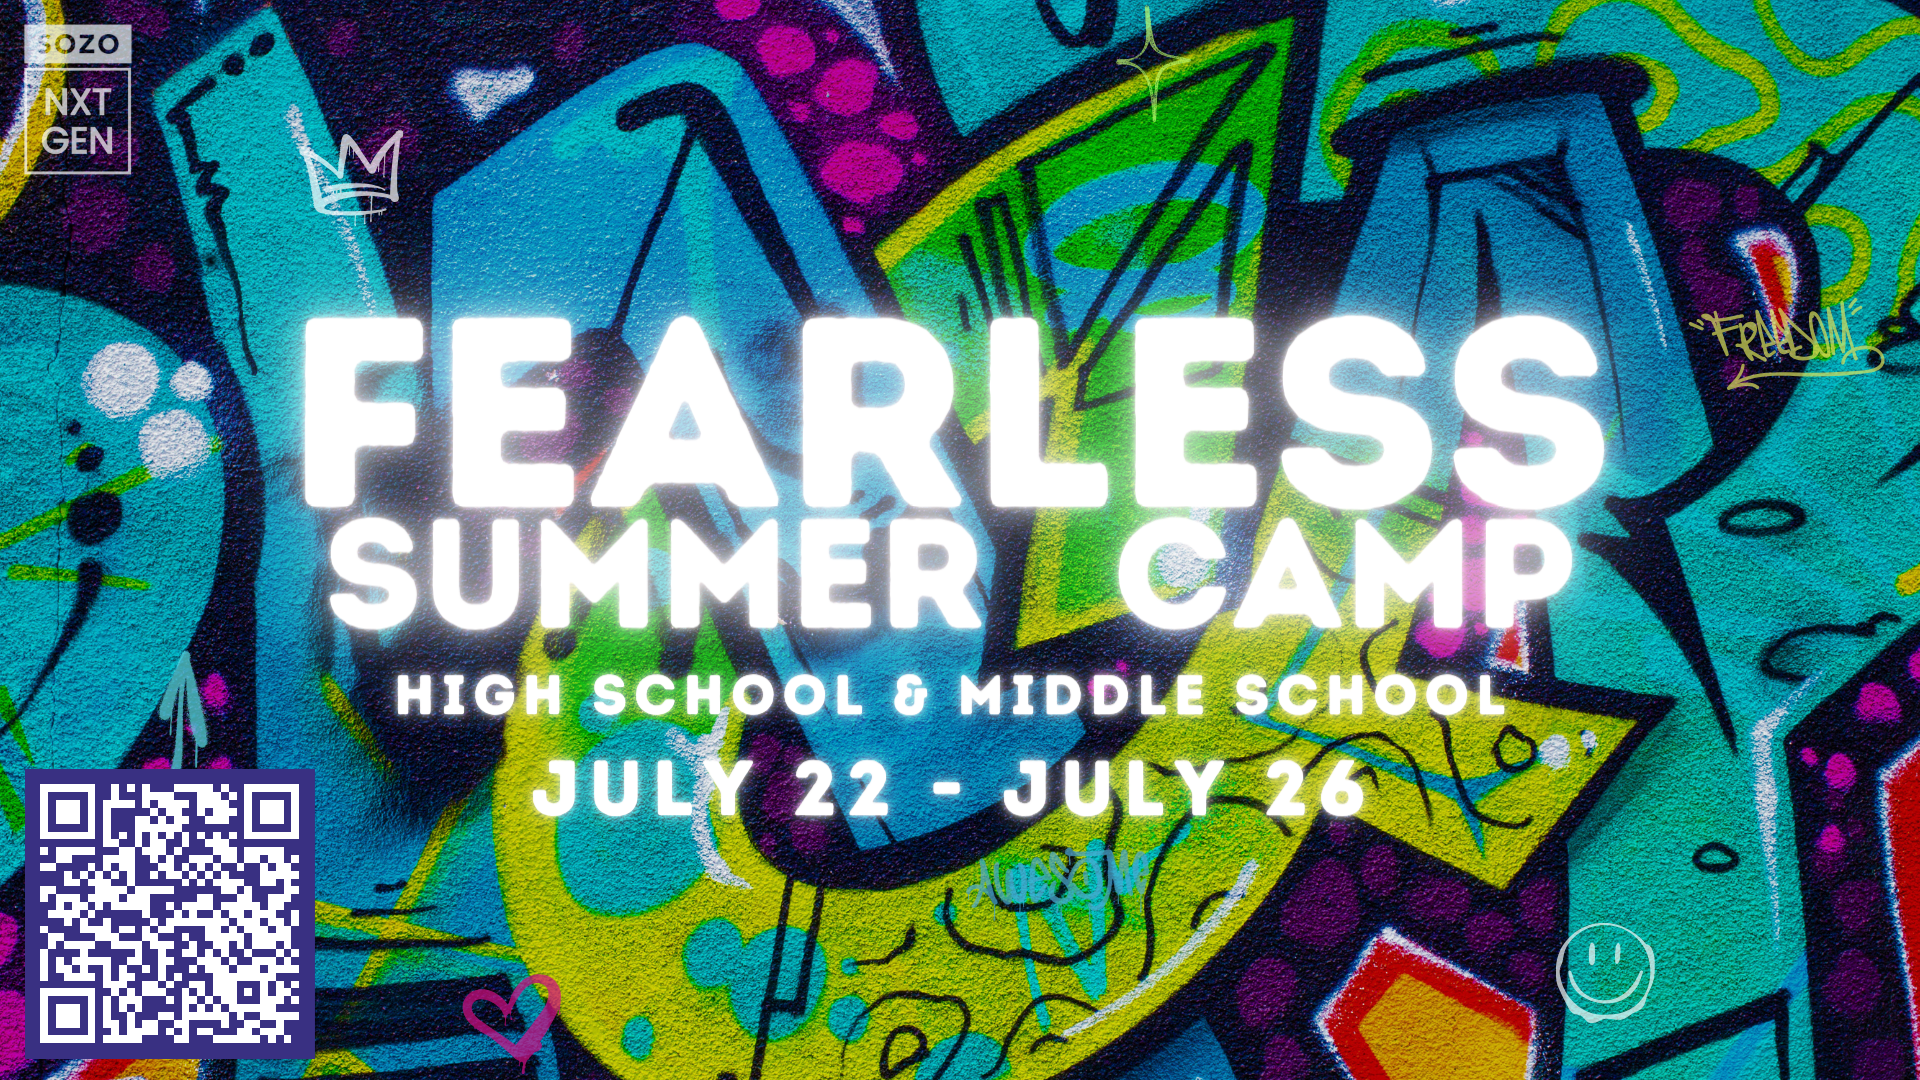 Next Gen Fearless Summer Camp Image